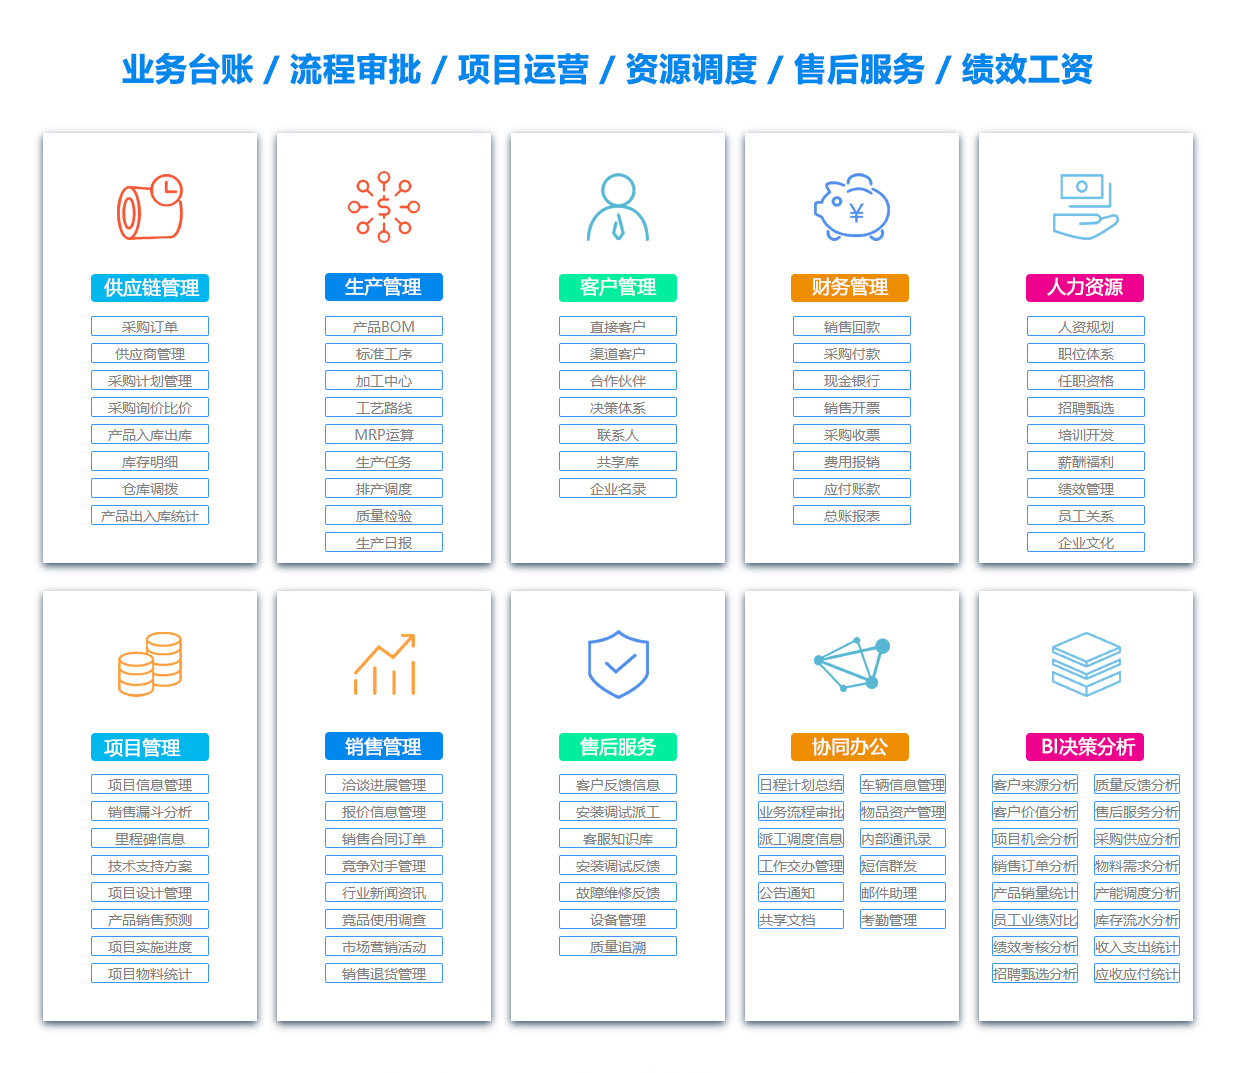 永州SCM:供应链管理系统